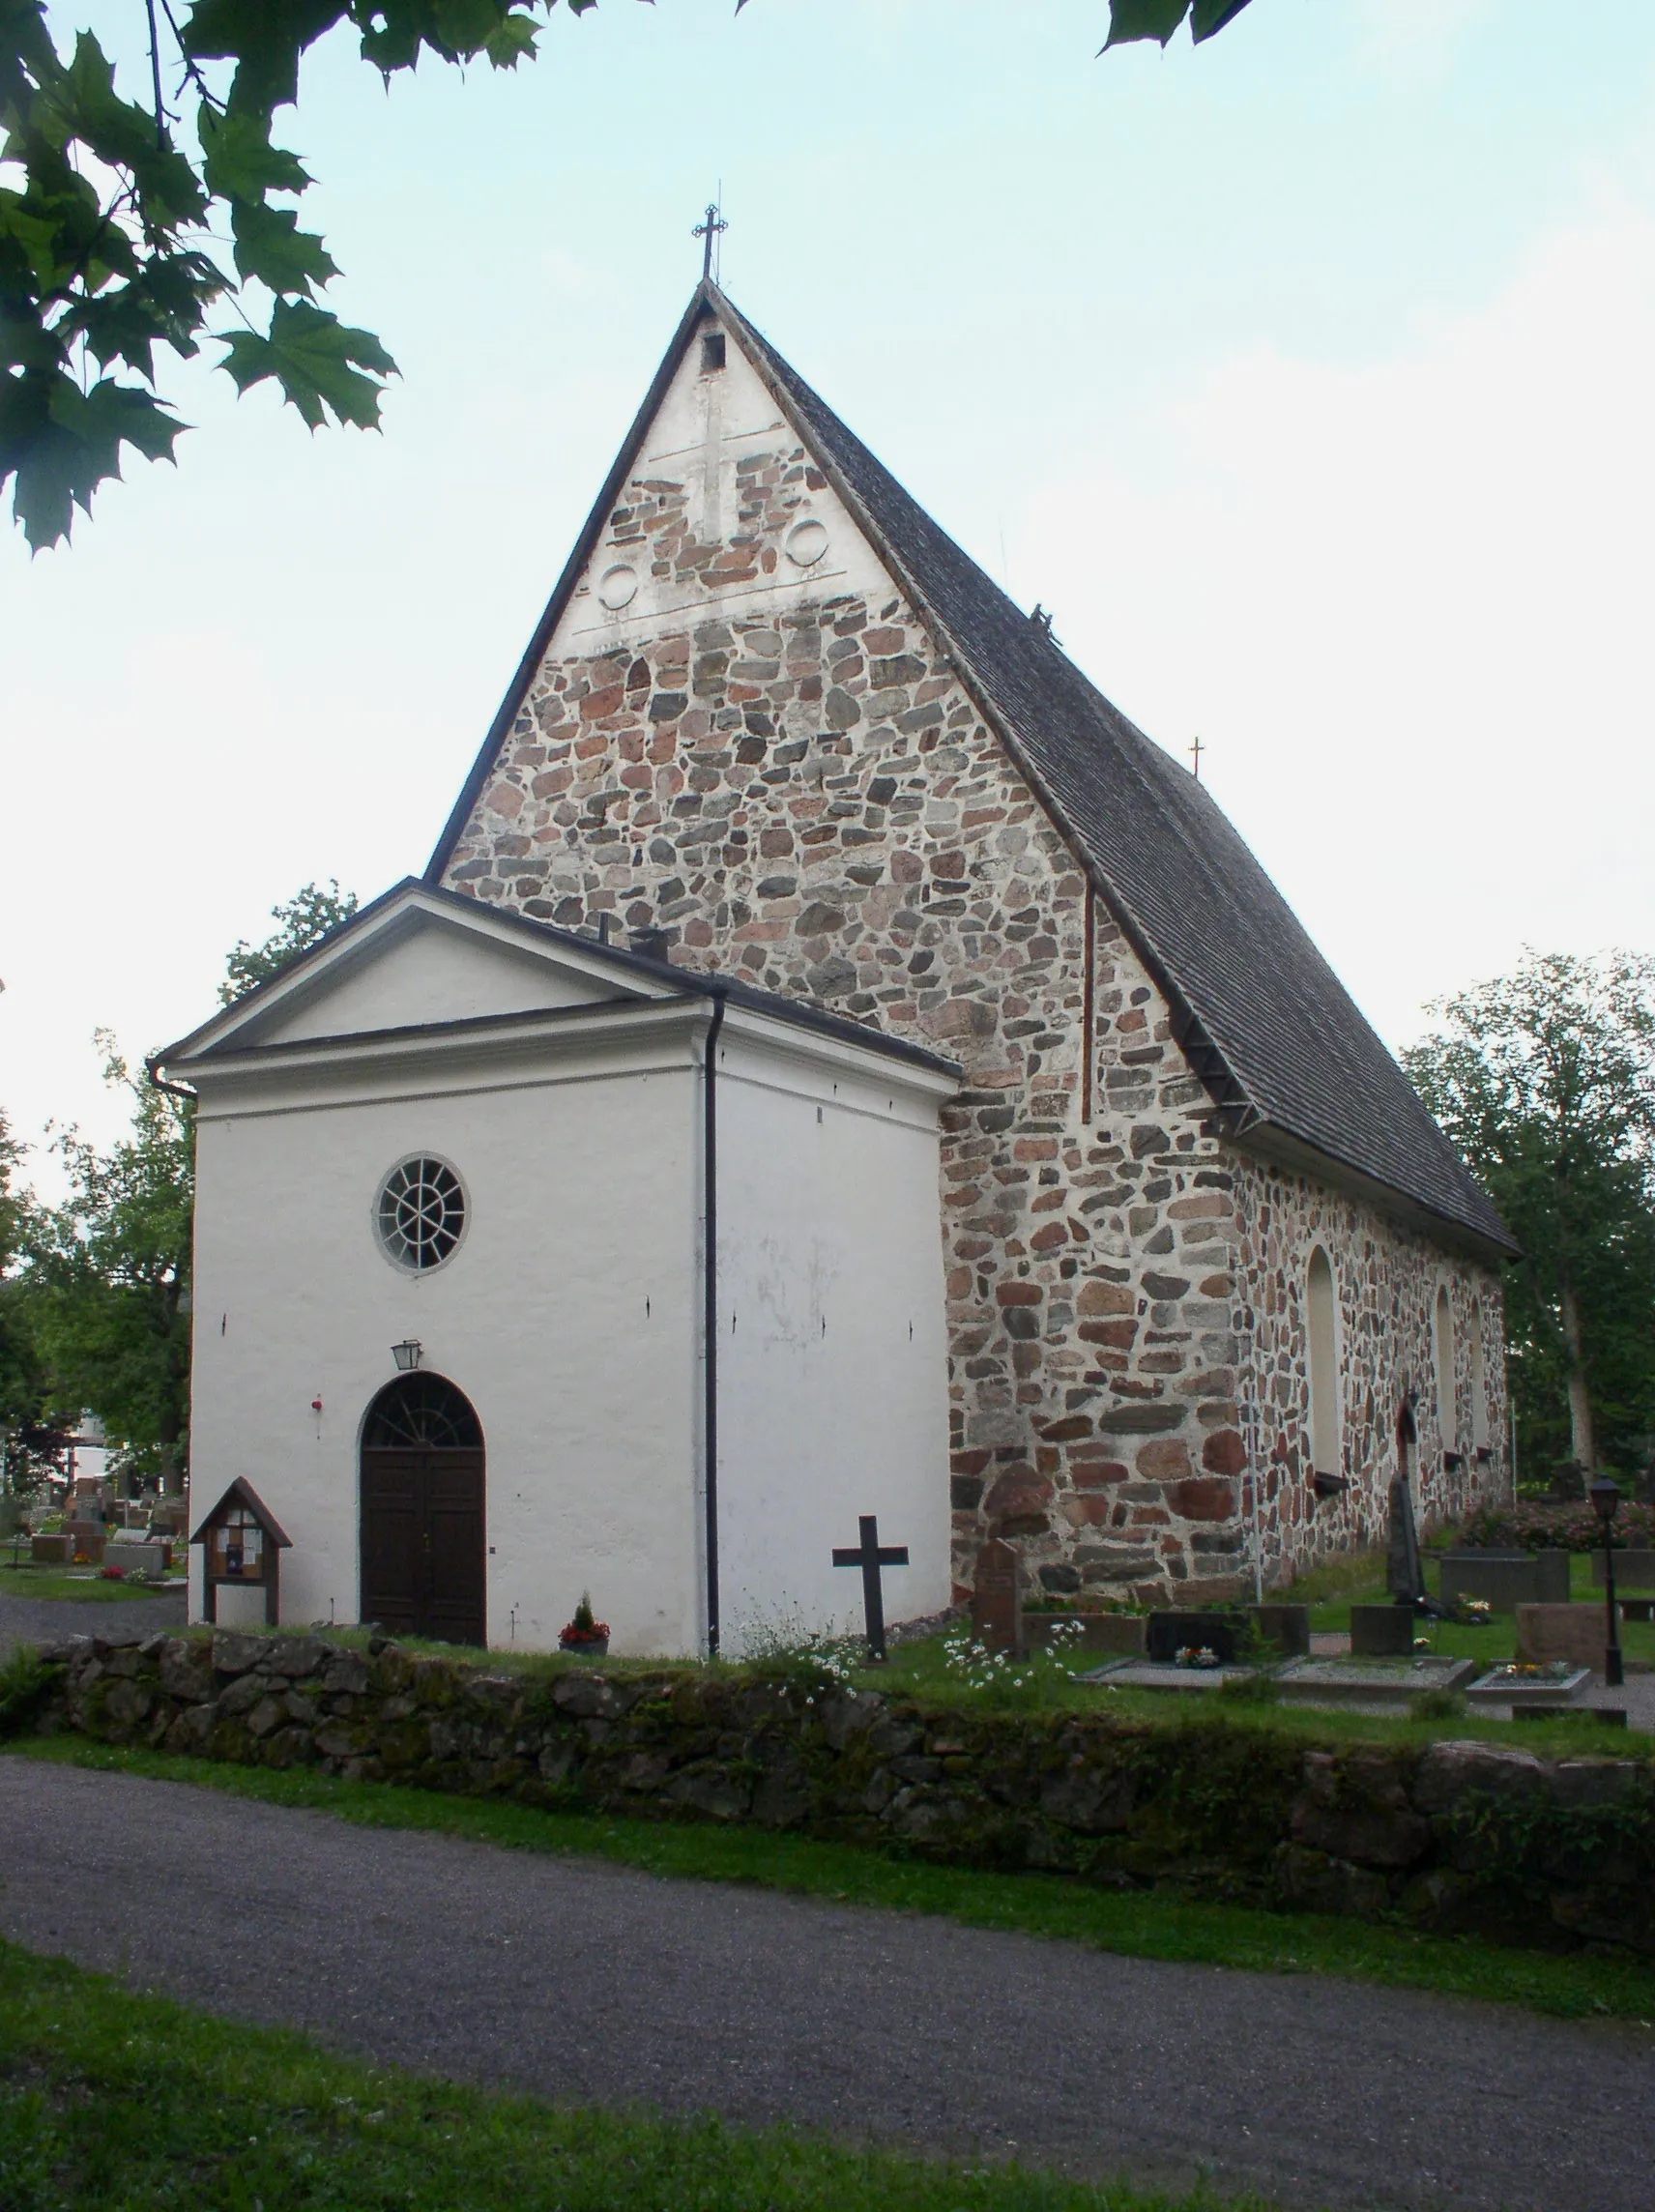 Photo showing: Pohja church in Raseborg (Pohja), Finland.